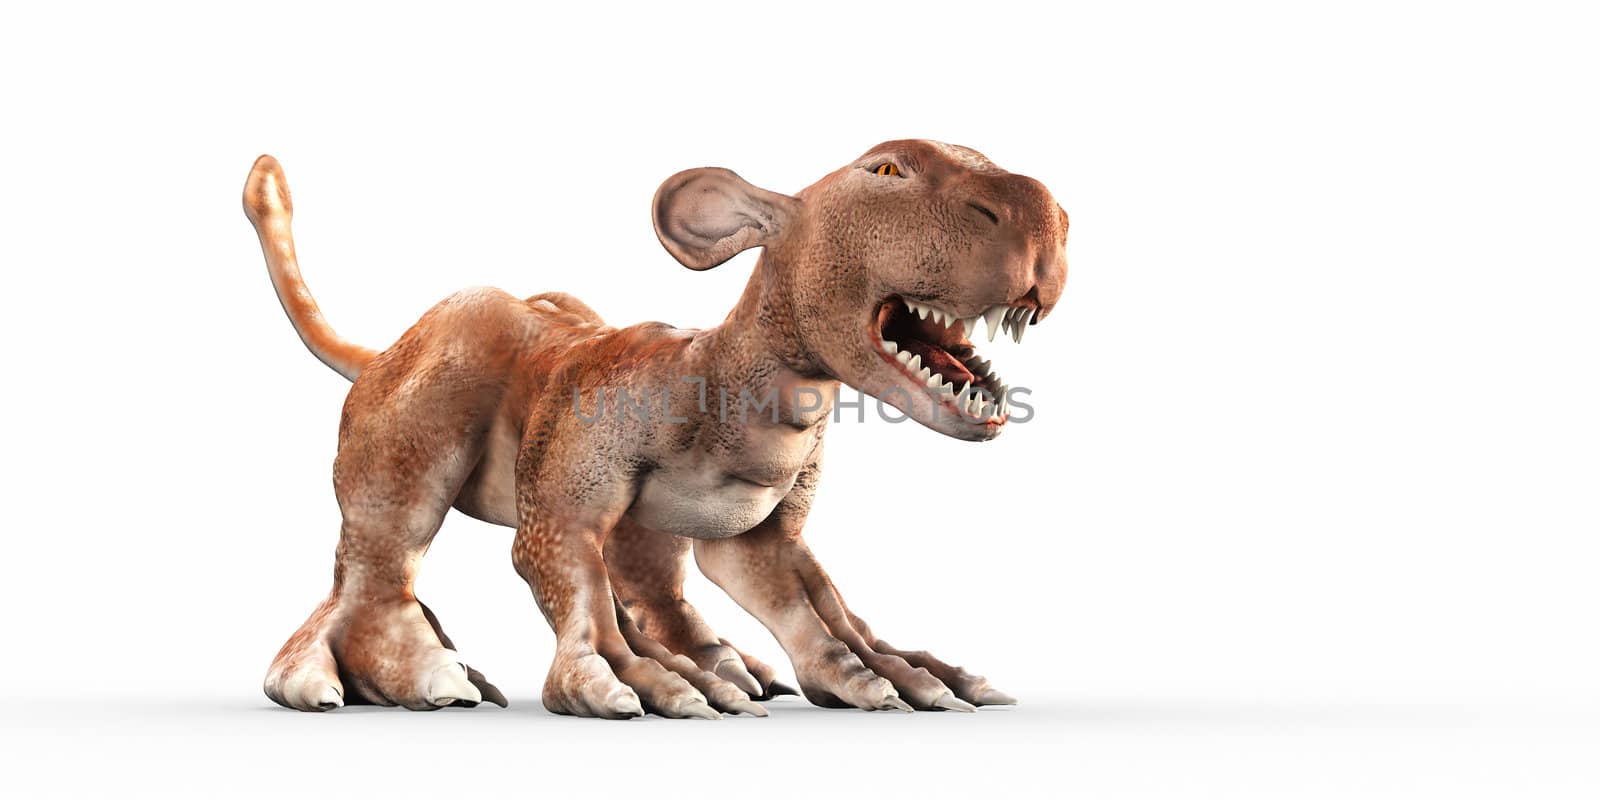 Prehistoric monster by chrisroll